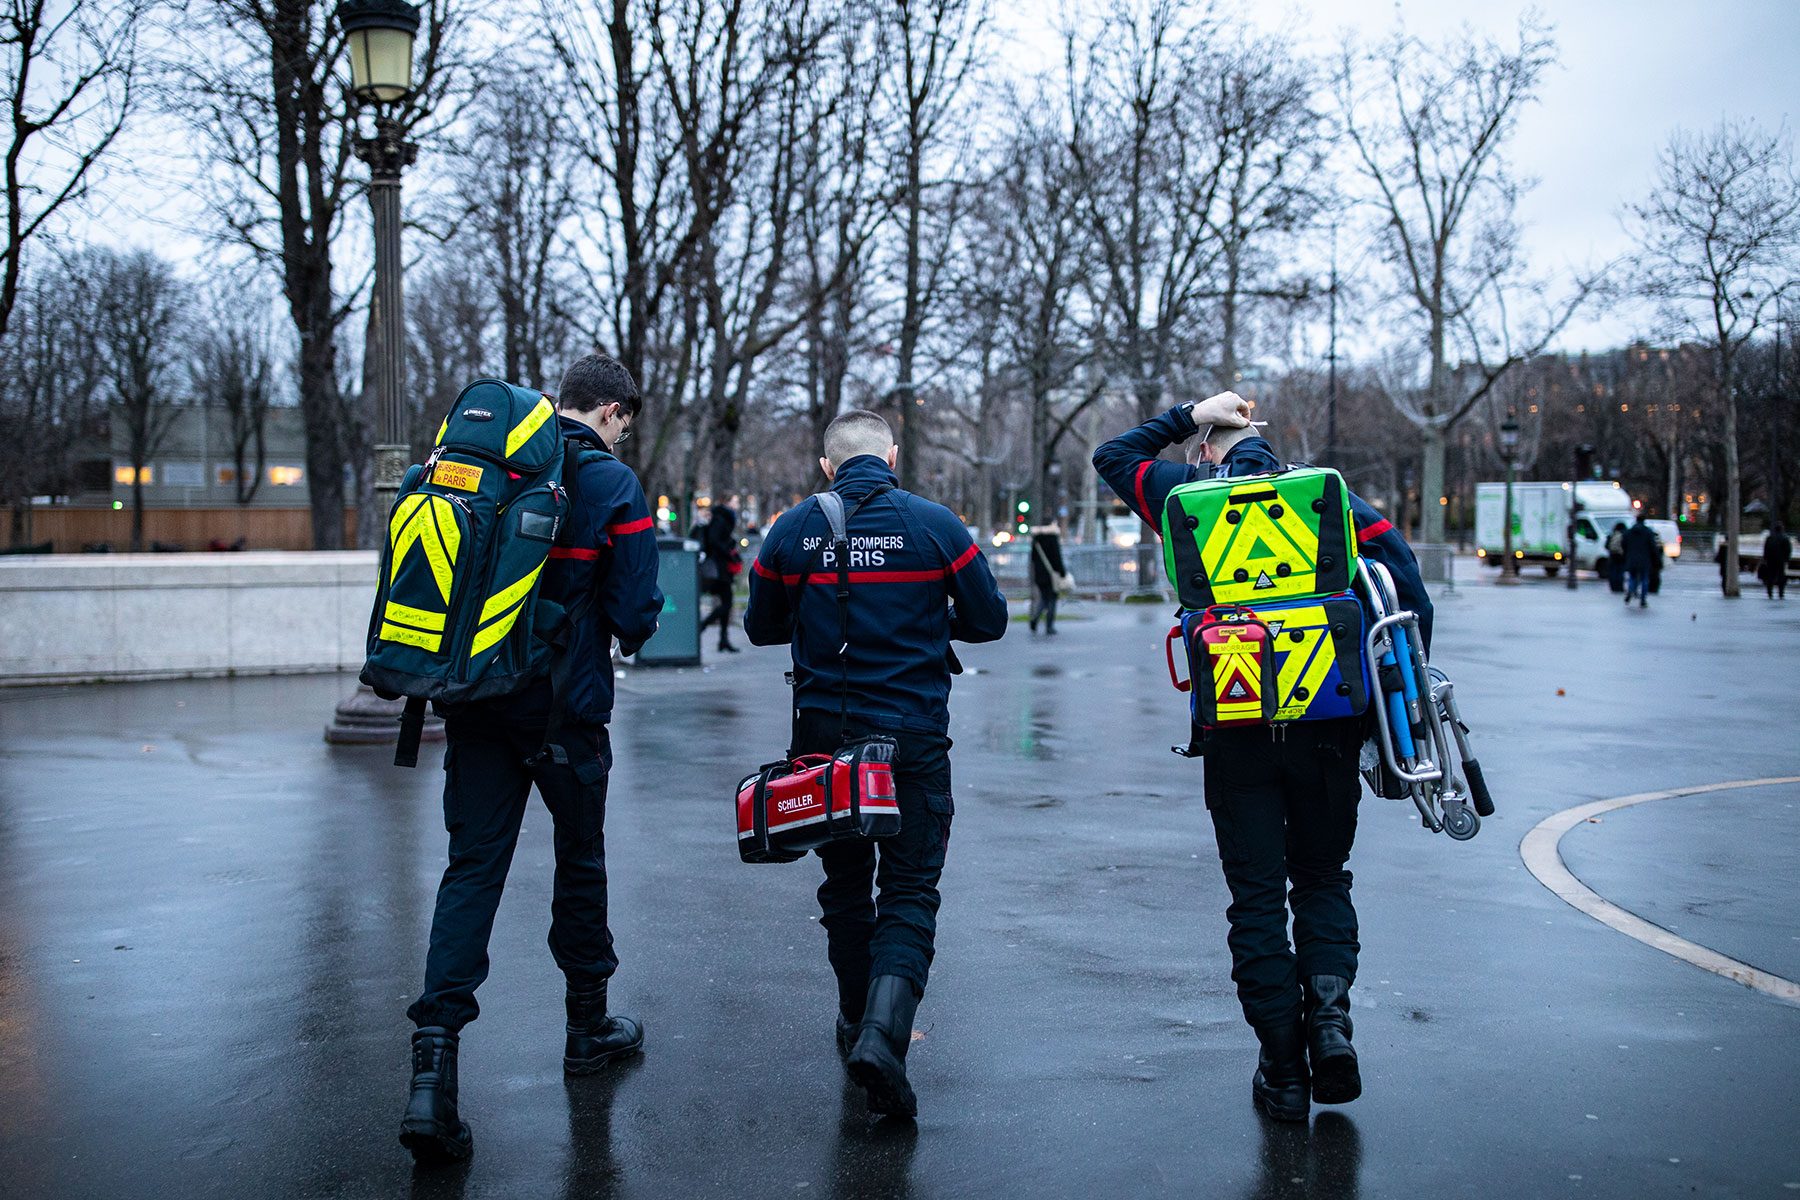 Sapeurs-pompiers de Paris en intervention pour une personne malade lieu public